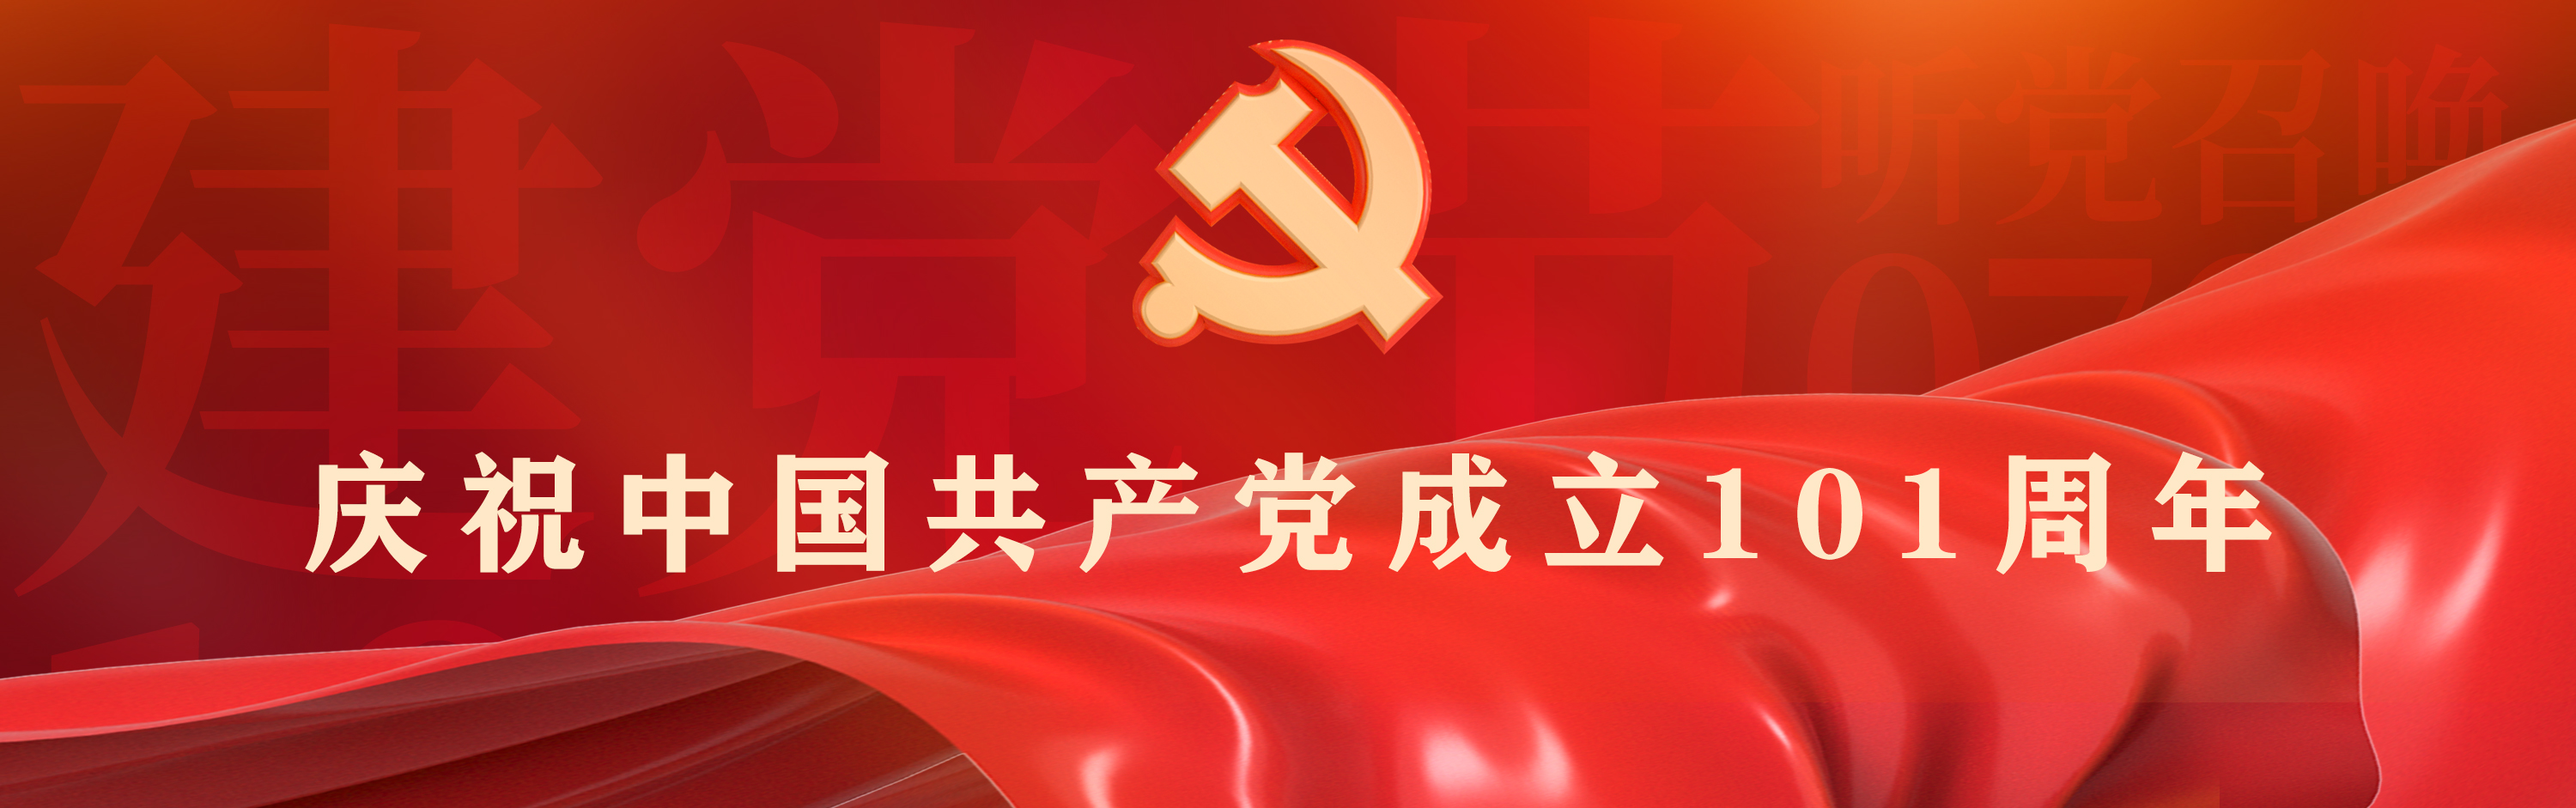 庆祝中国共产党成立101周年专题